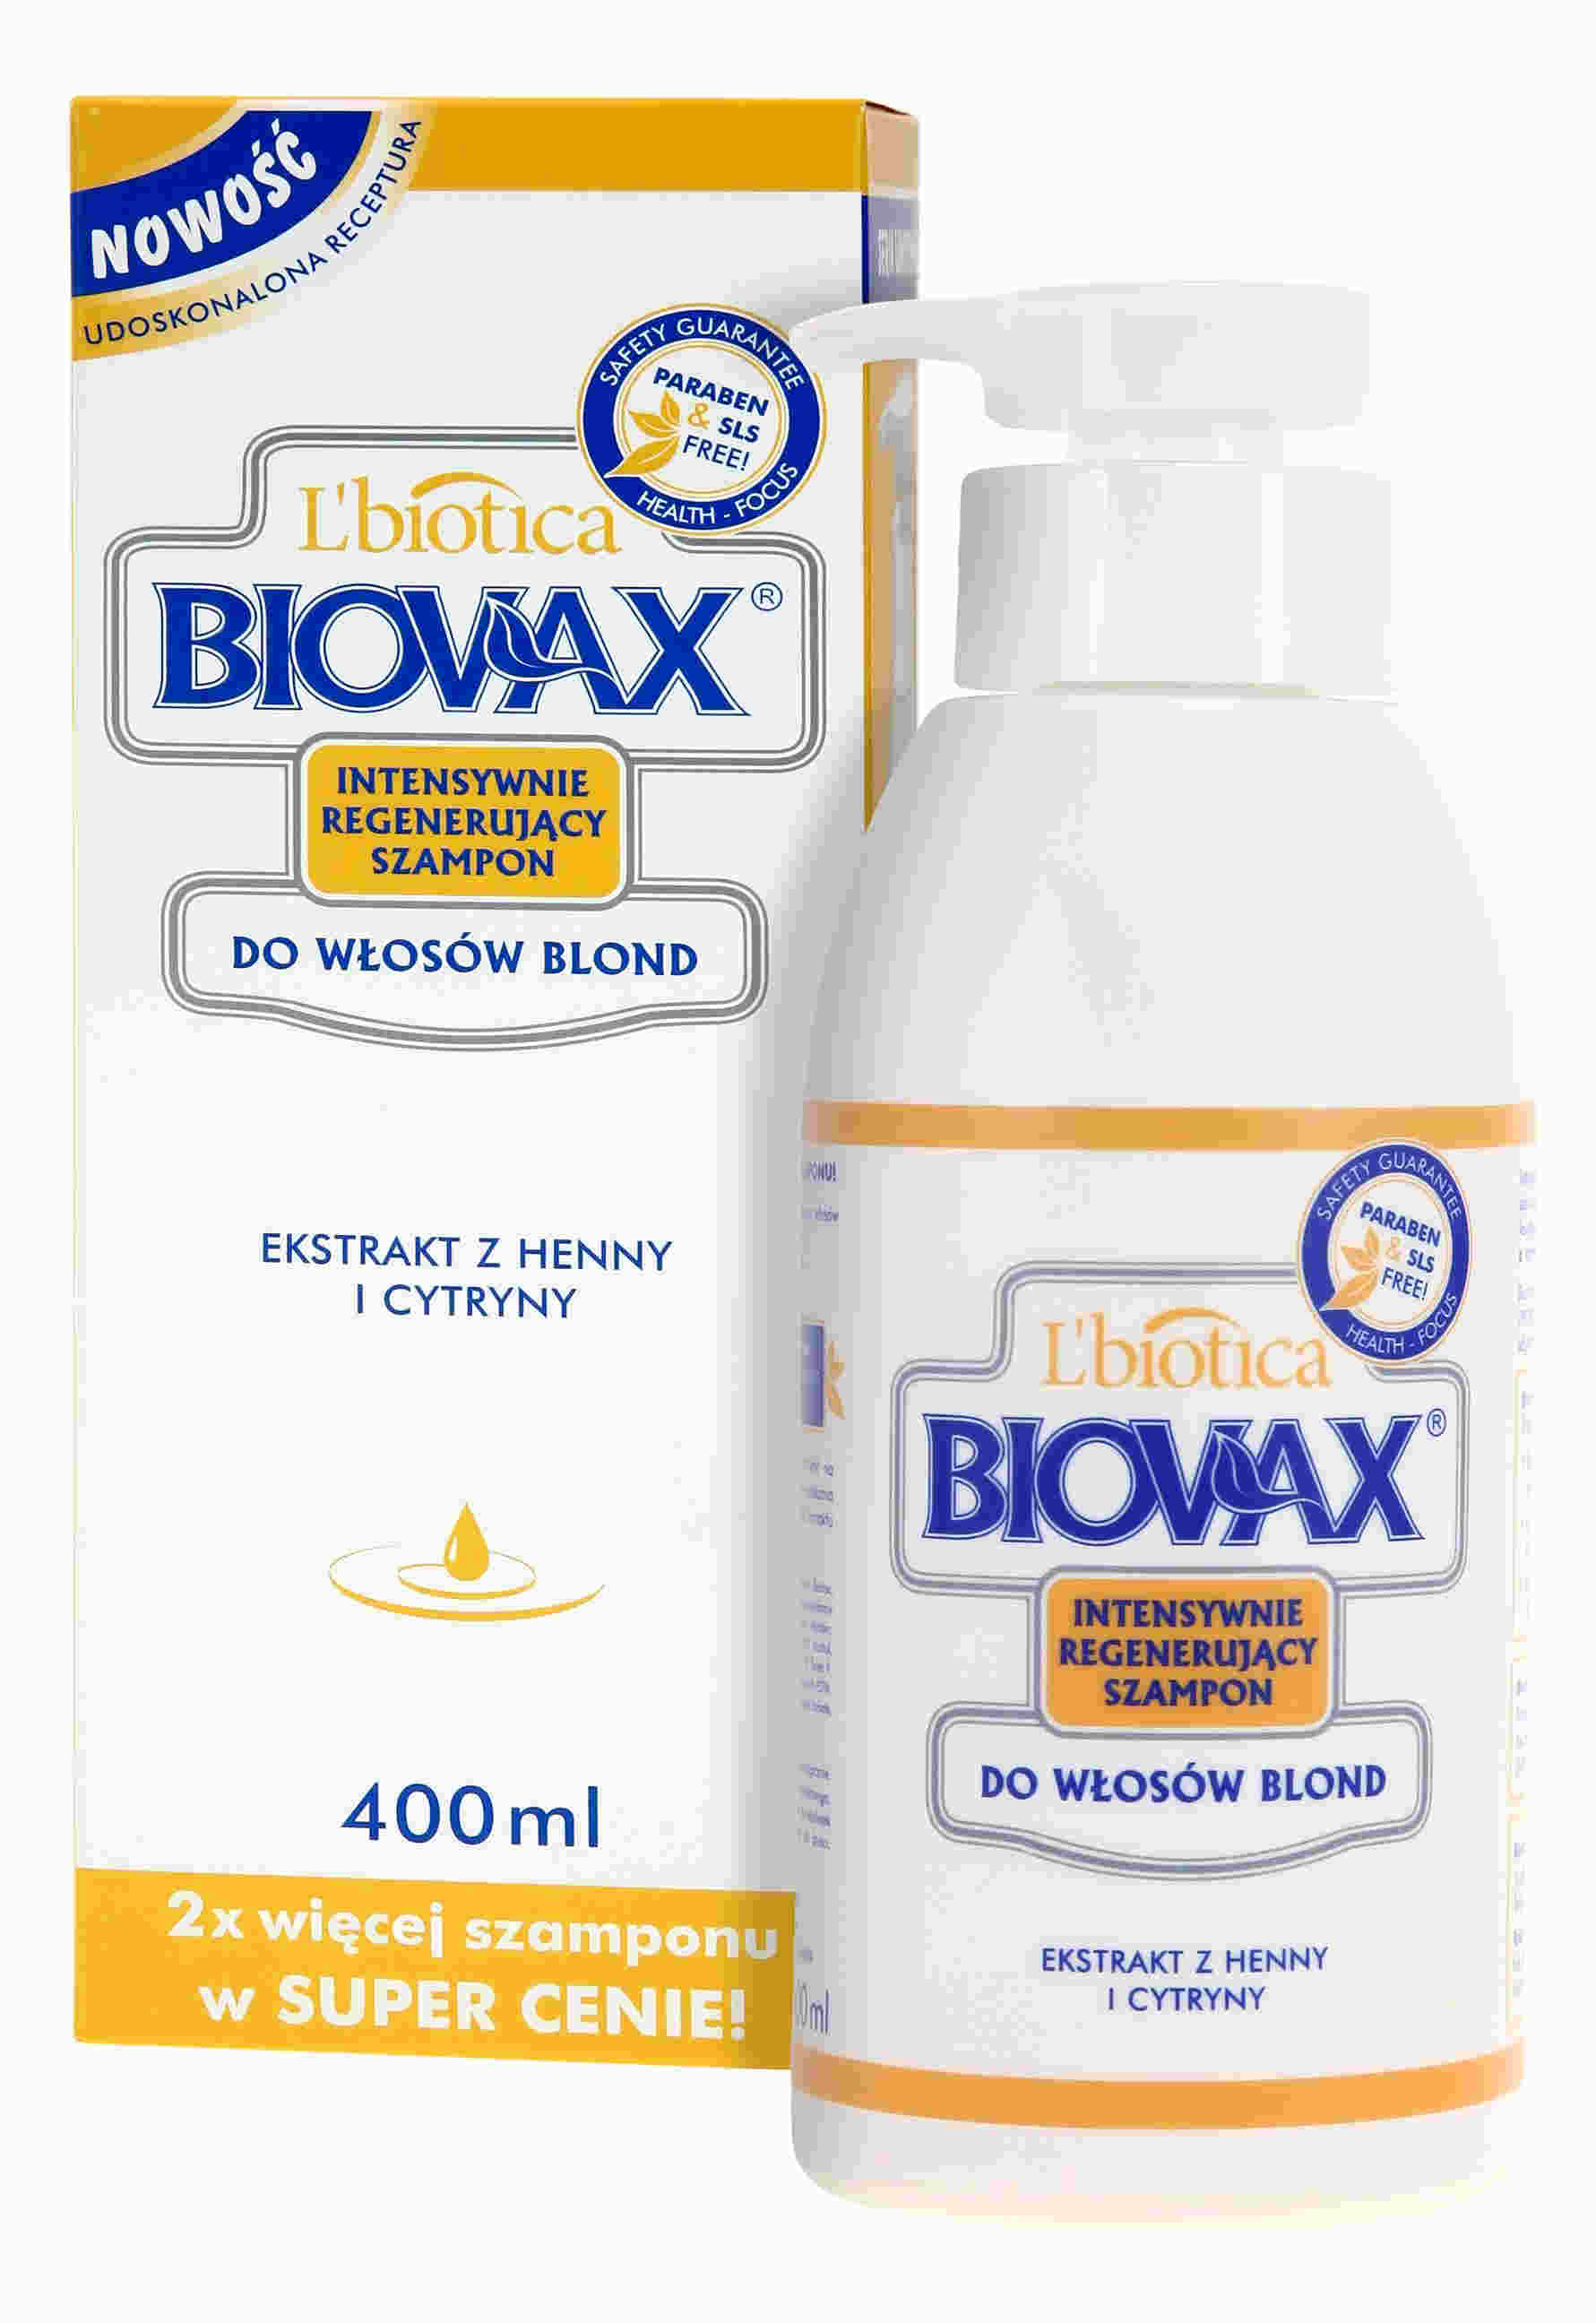 biovax intensywnie regenerujący szampon do włosów blond